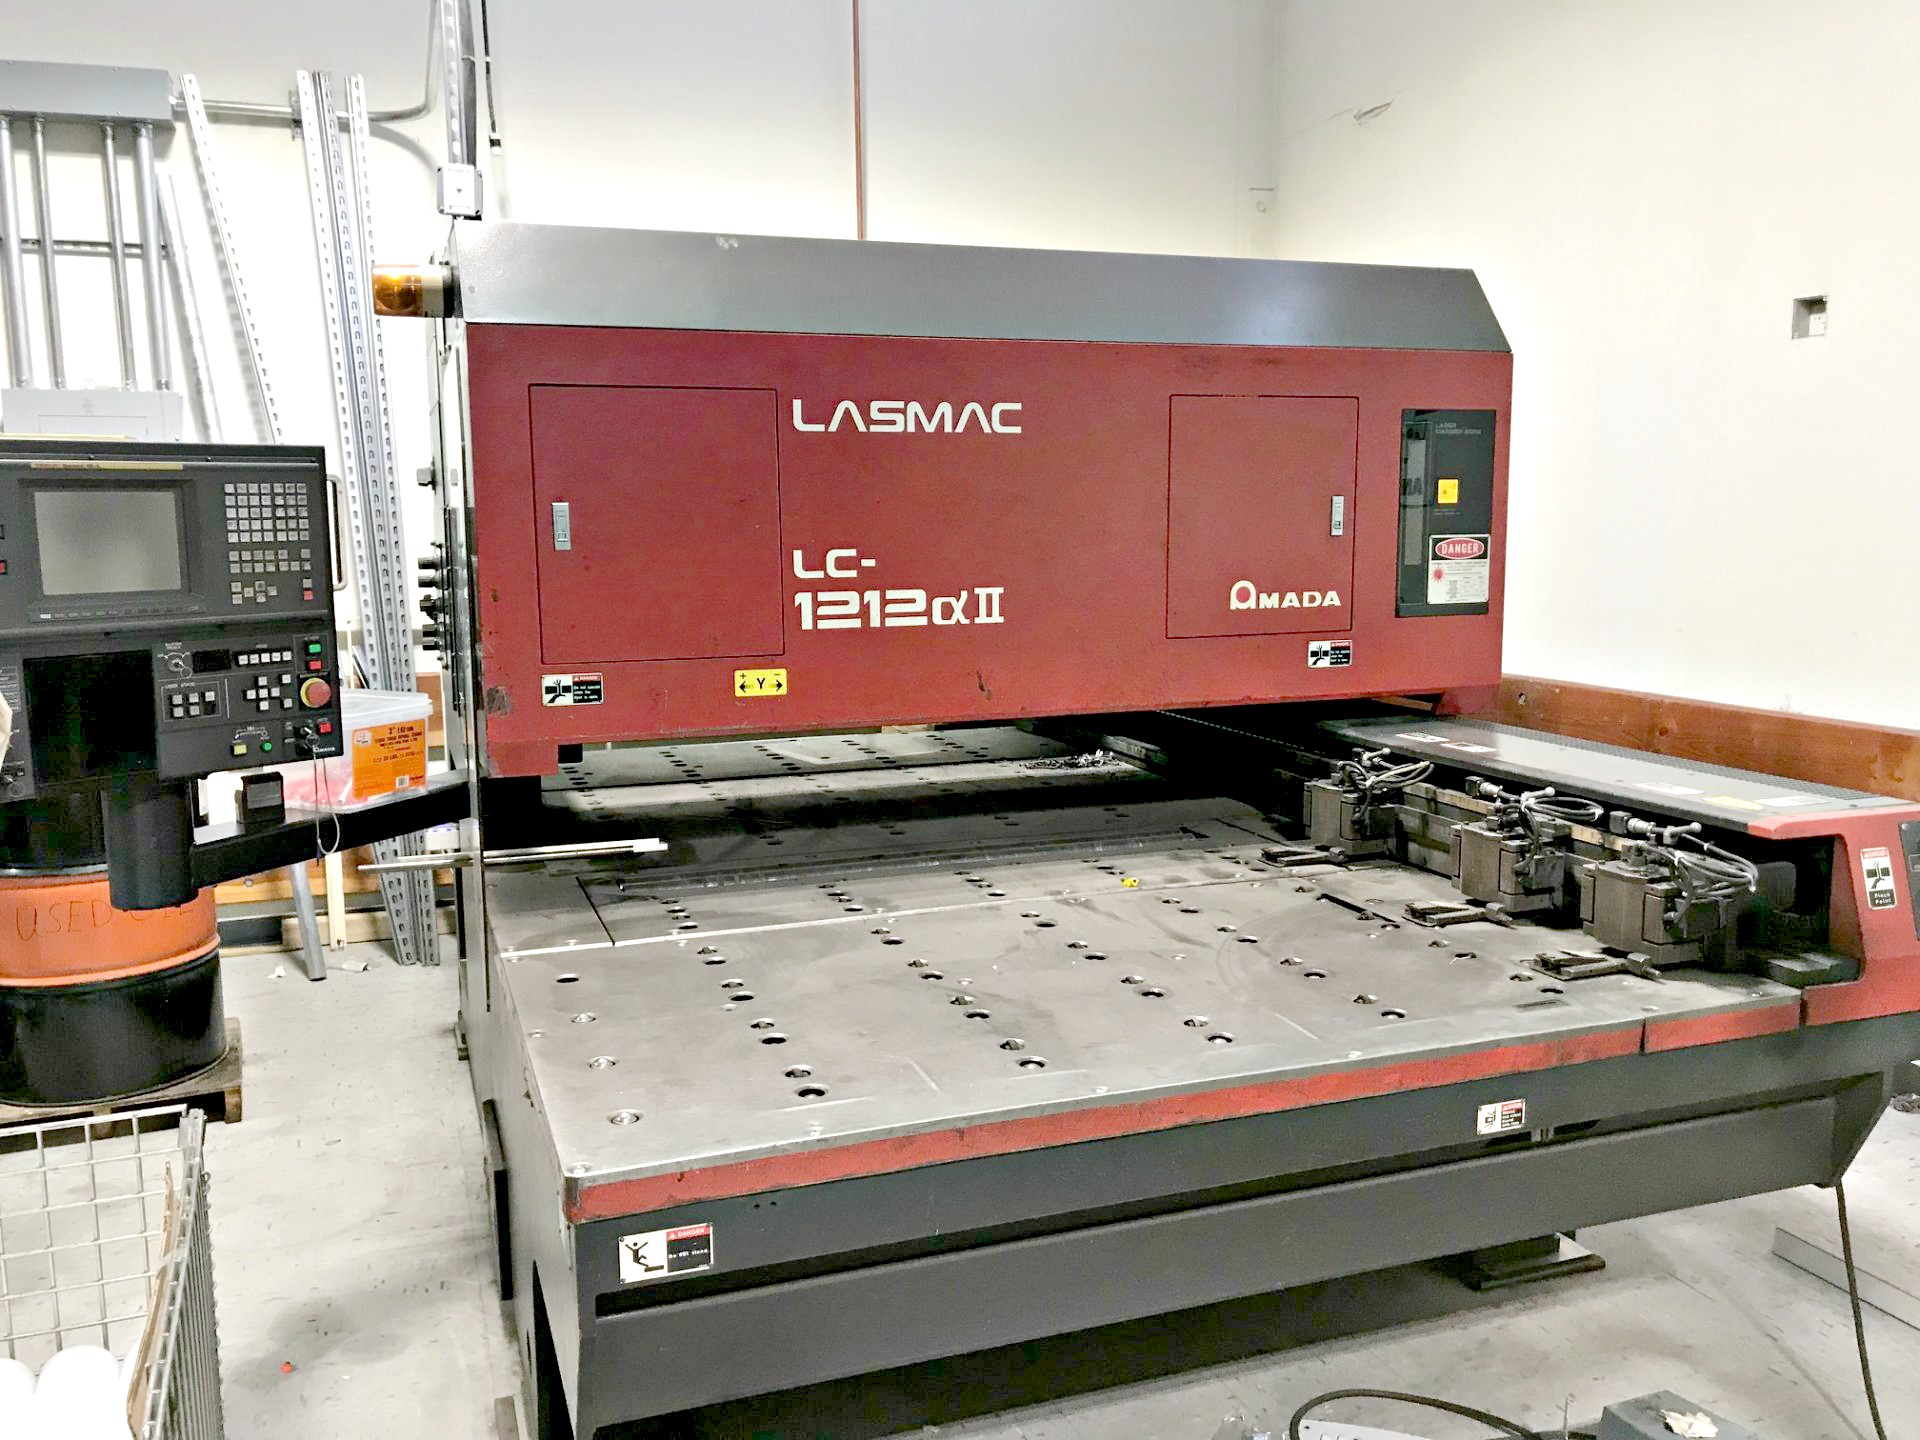 Amada Lasmac LC-1212 CNC Laser Machine (Used) Item # UE-090120H (Arizona)